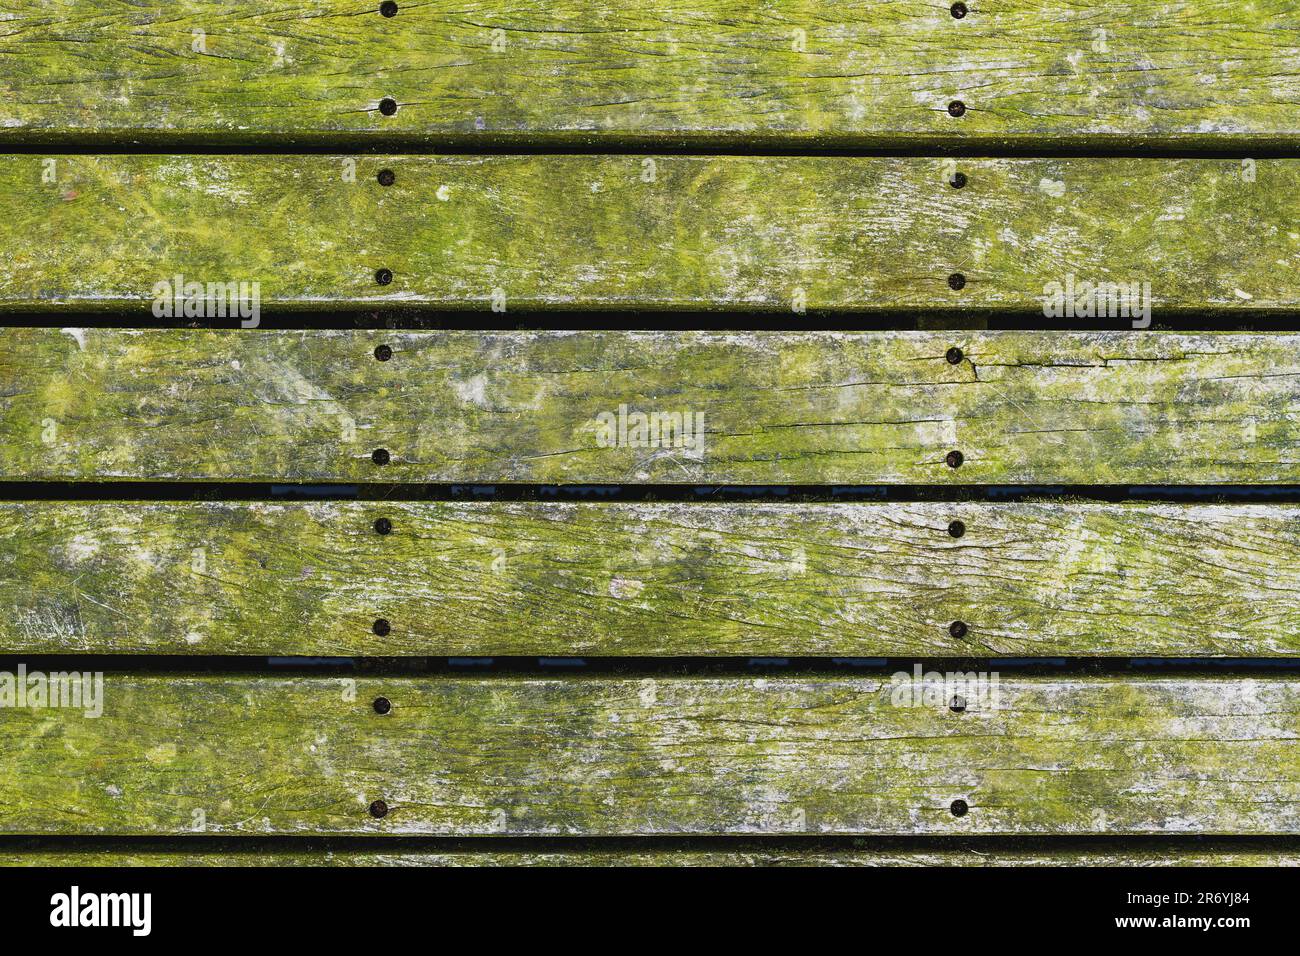 Moule vert couvrant les planchers de bois franc dans le parc de Halmstad, Suède. Vue de dessus. Banque D'Images